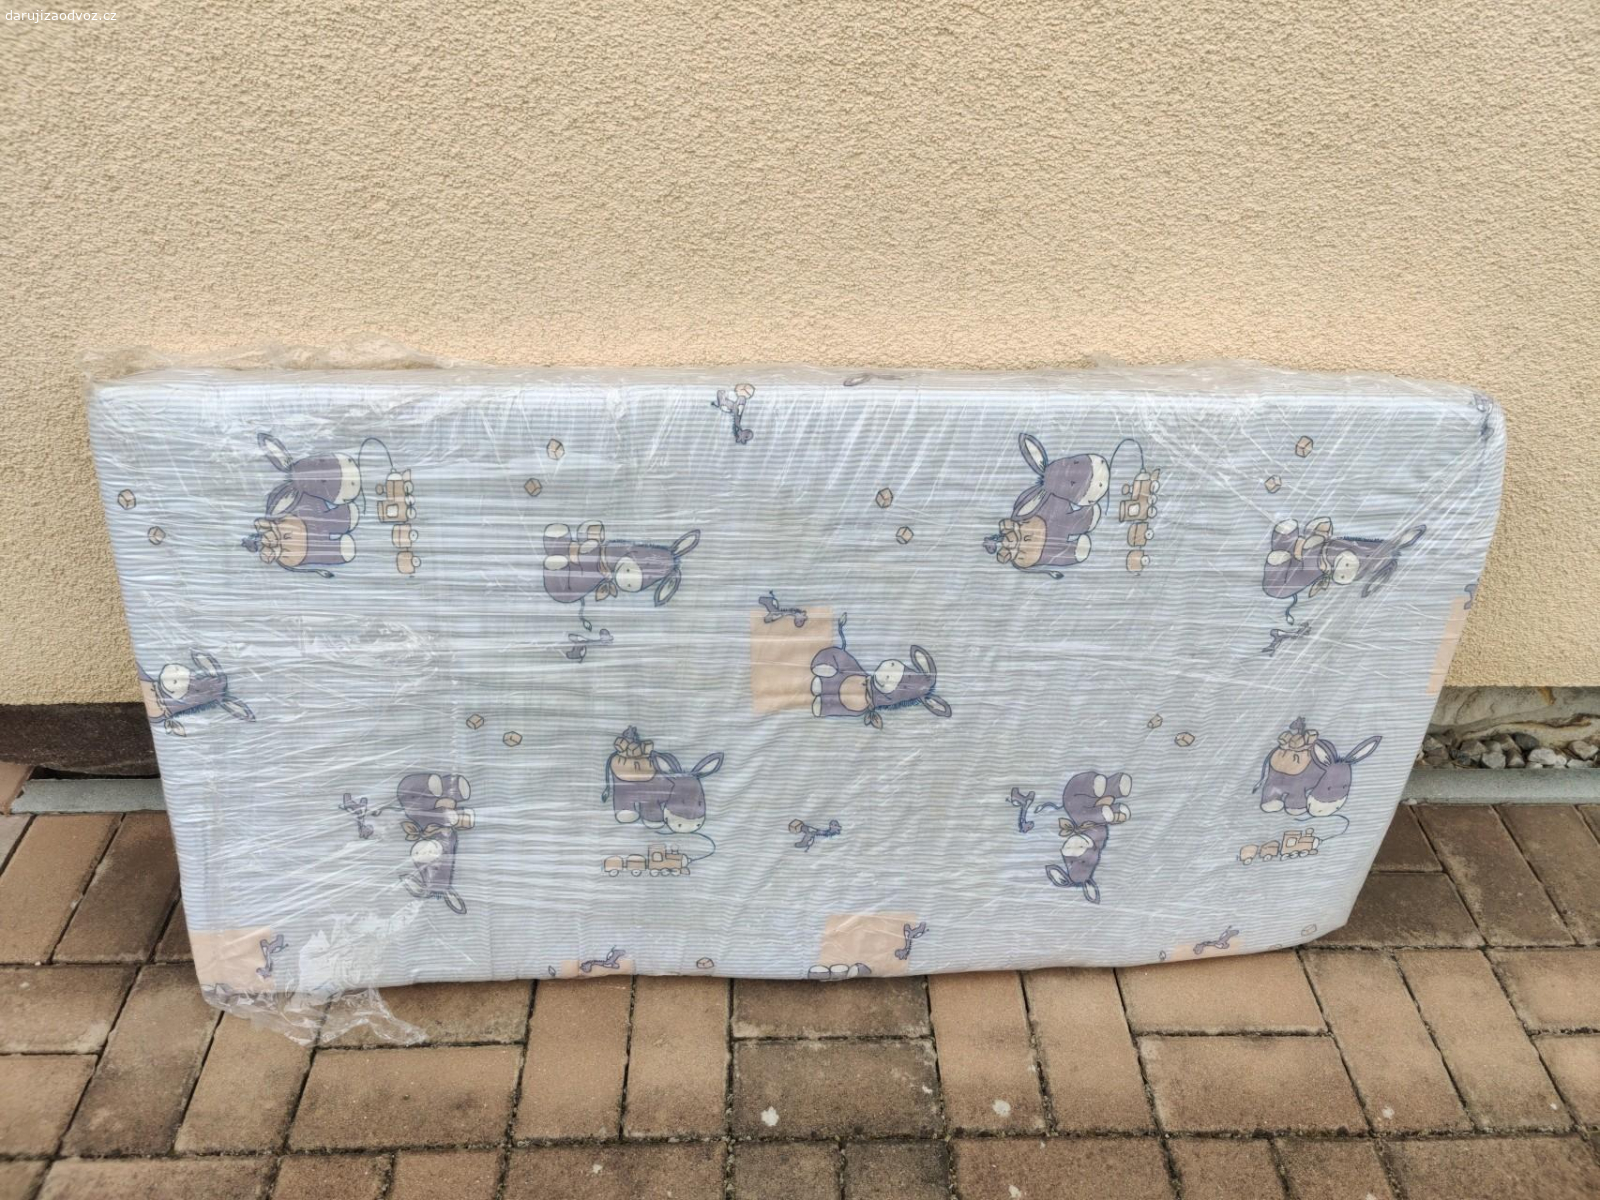 dětská matrace. použitá